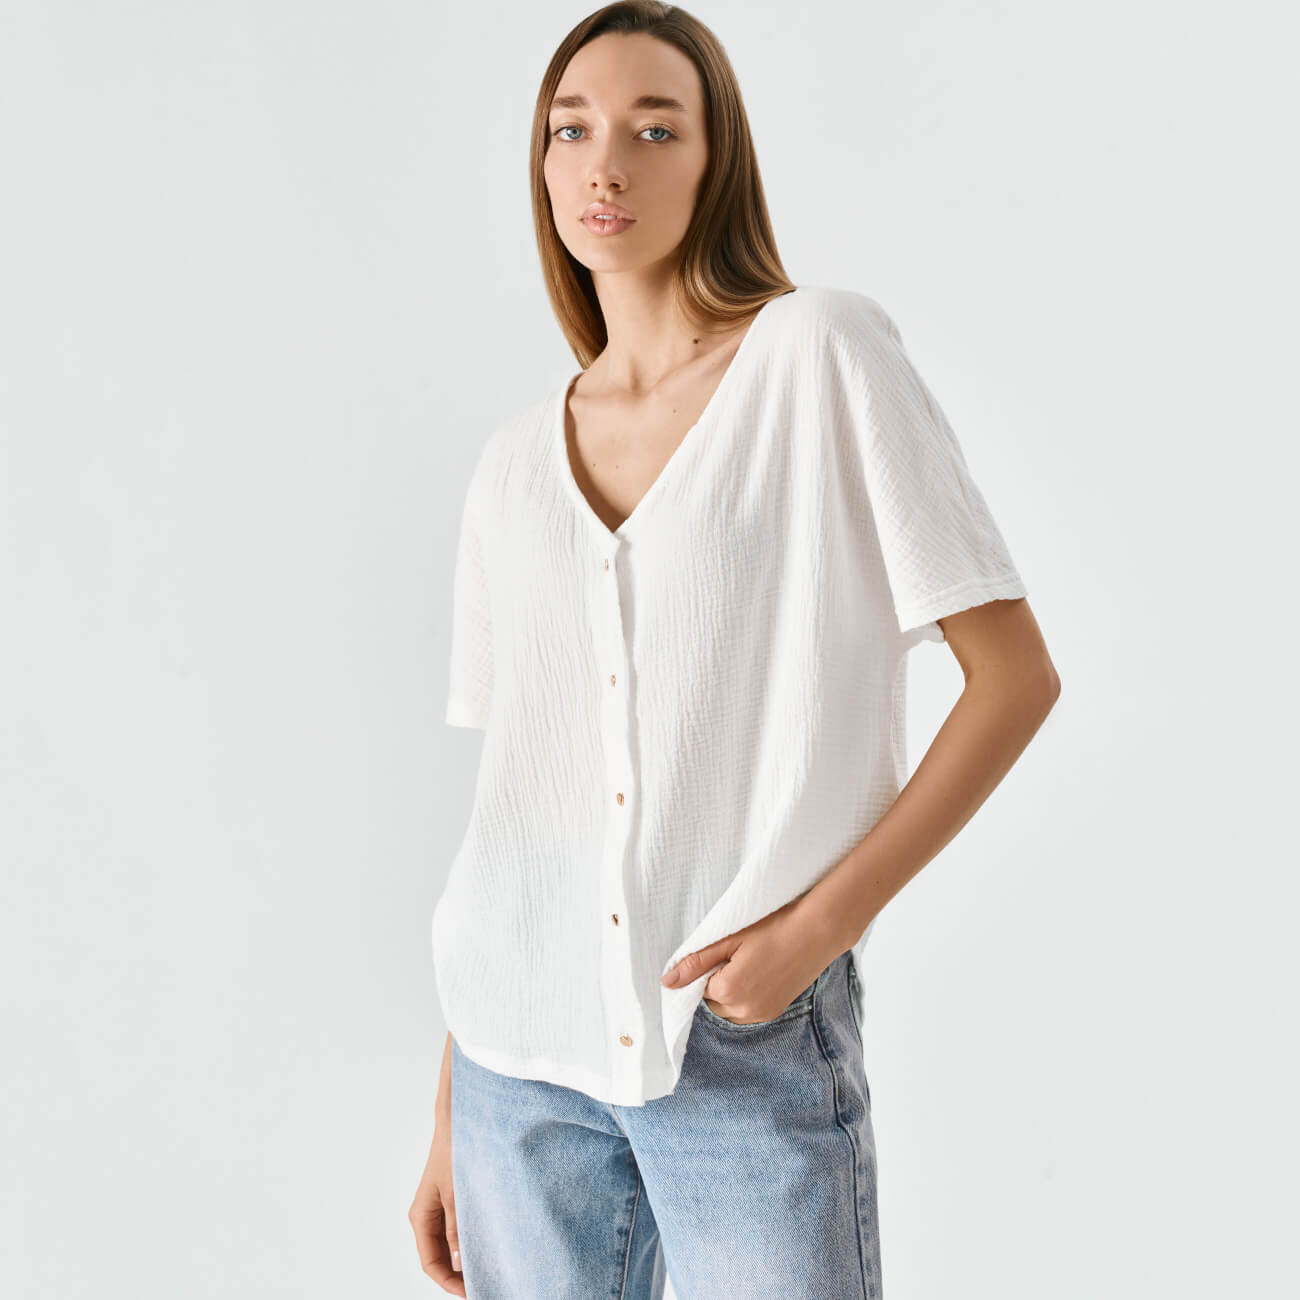 Рубашка женская, р. XL, с коротким рукавом, муслин, белая, Allison боди детское с коротким рукавом горошинка рост 80 см молочный персиковый 2 шт